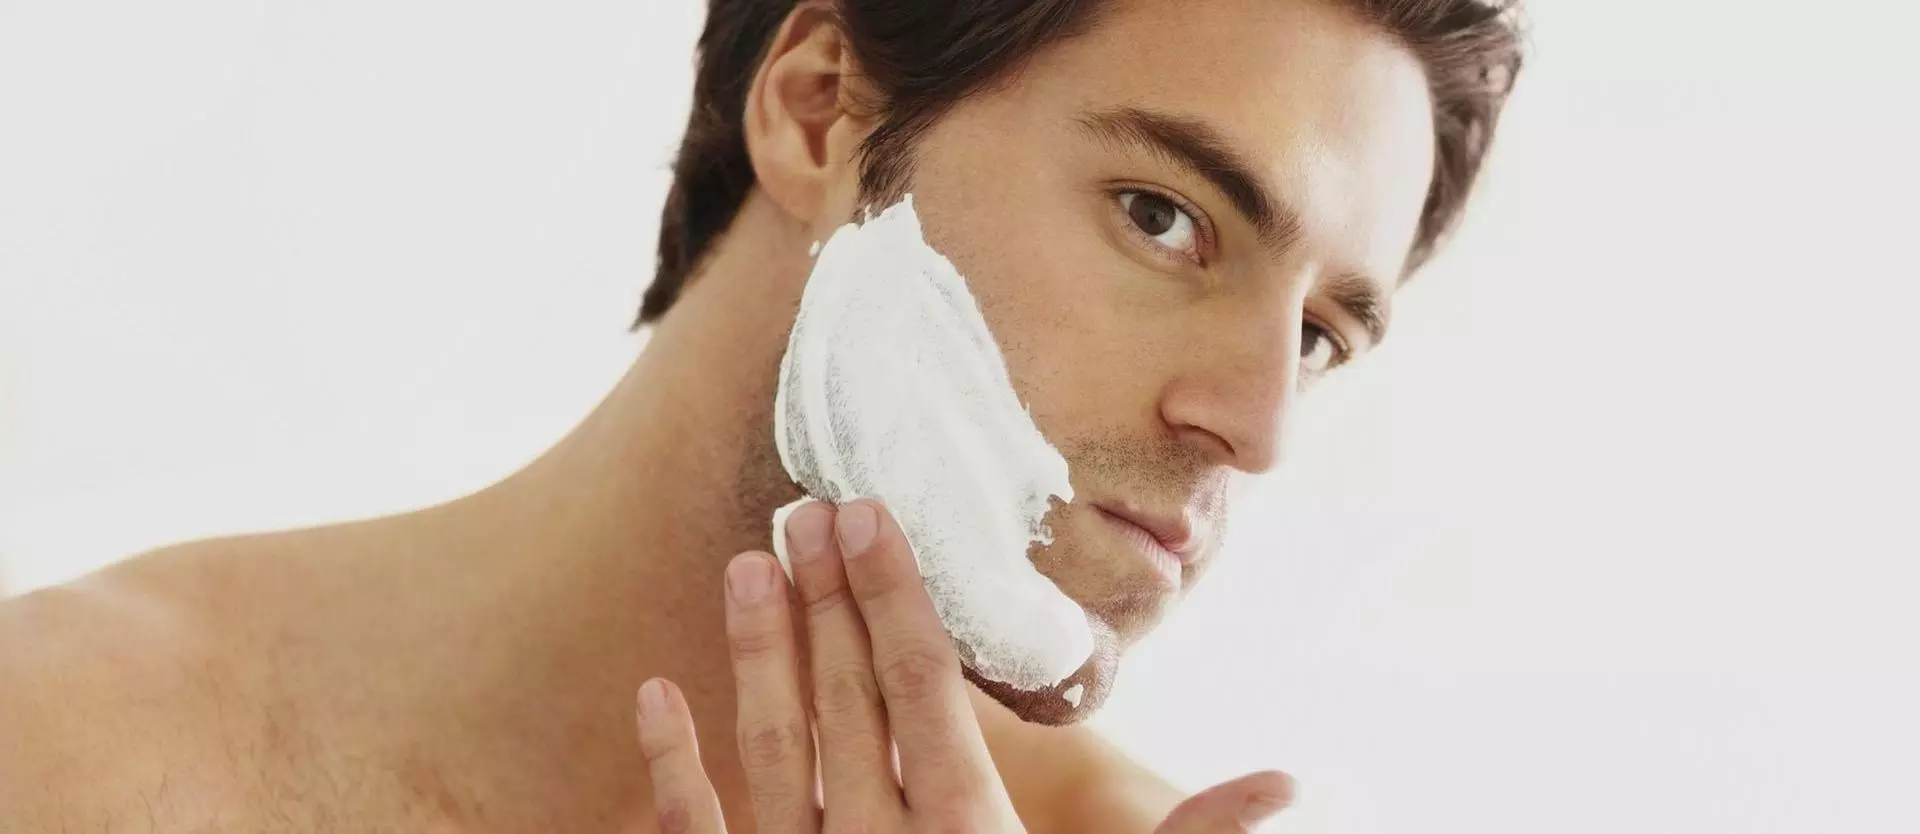 Hair Grooming Tips for Men